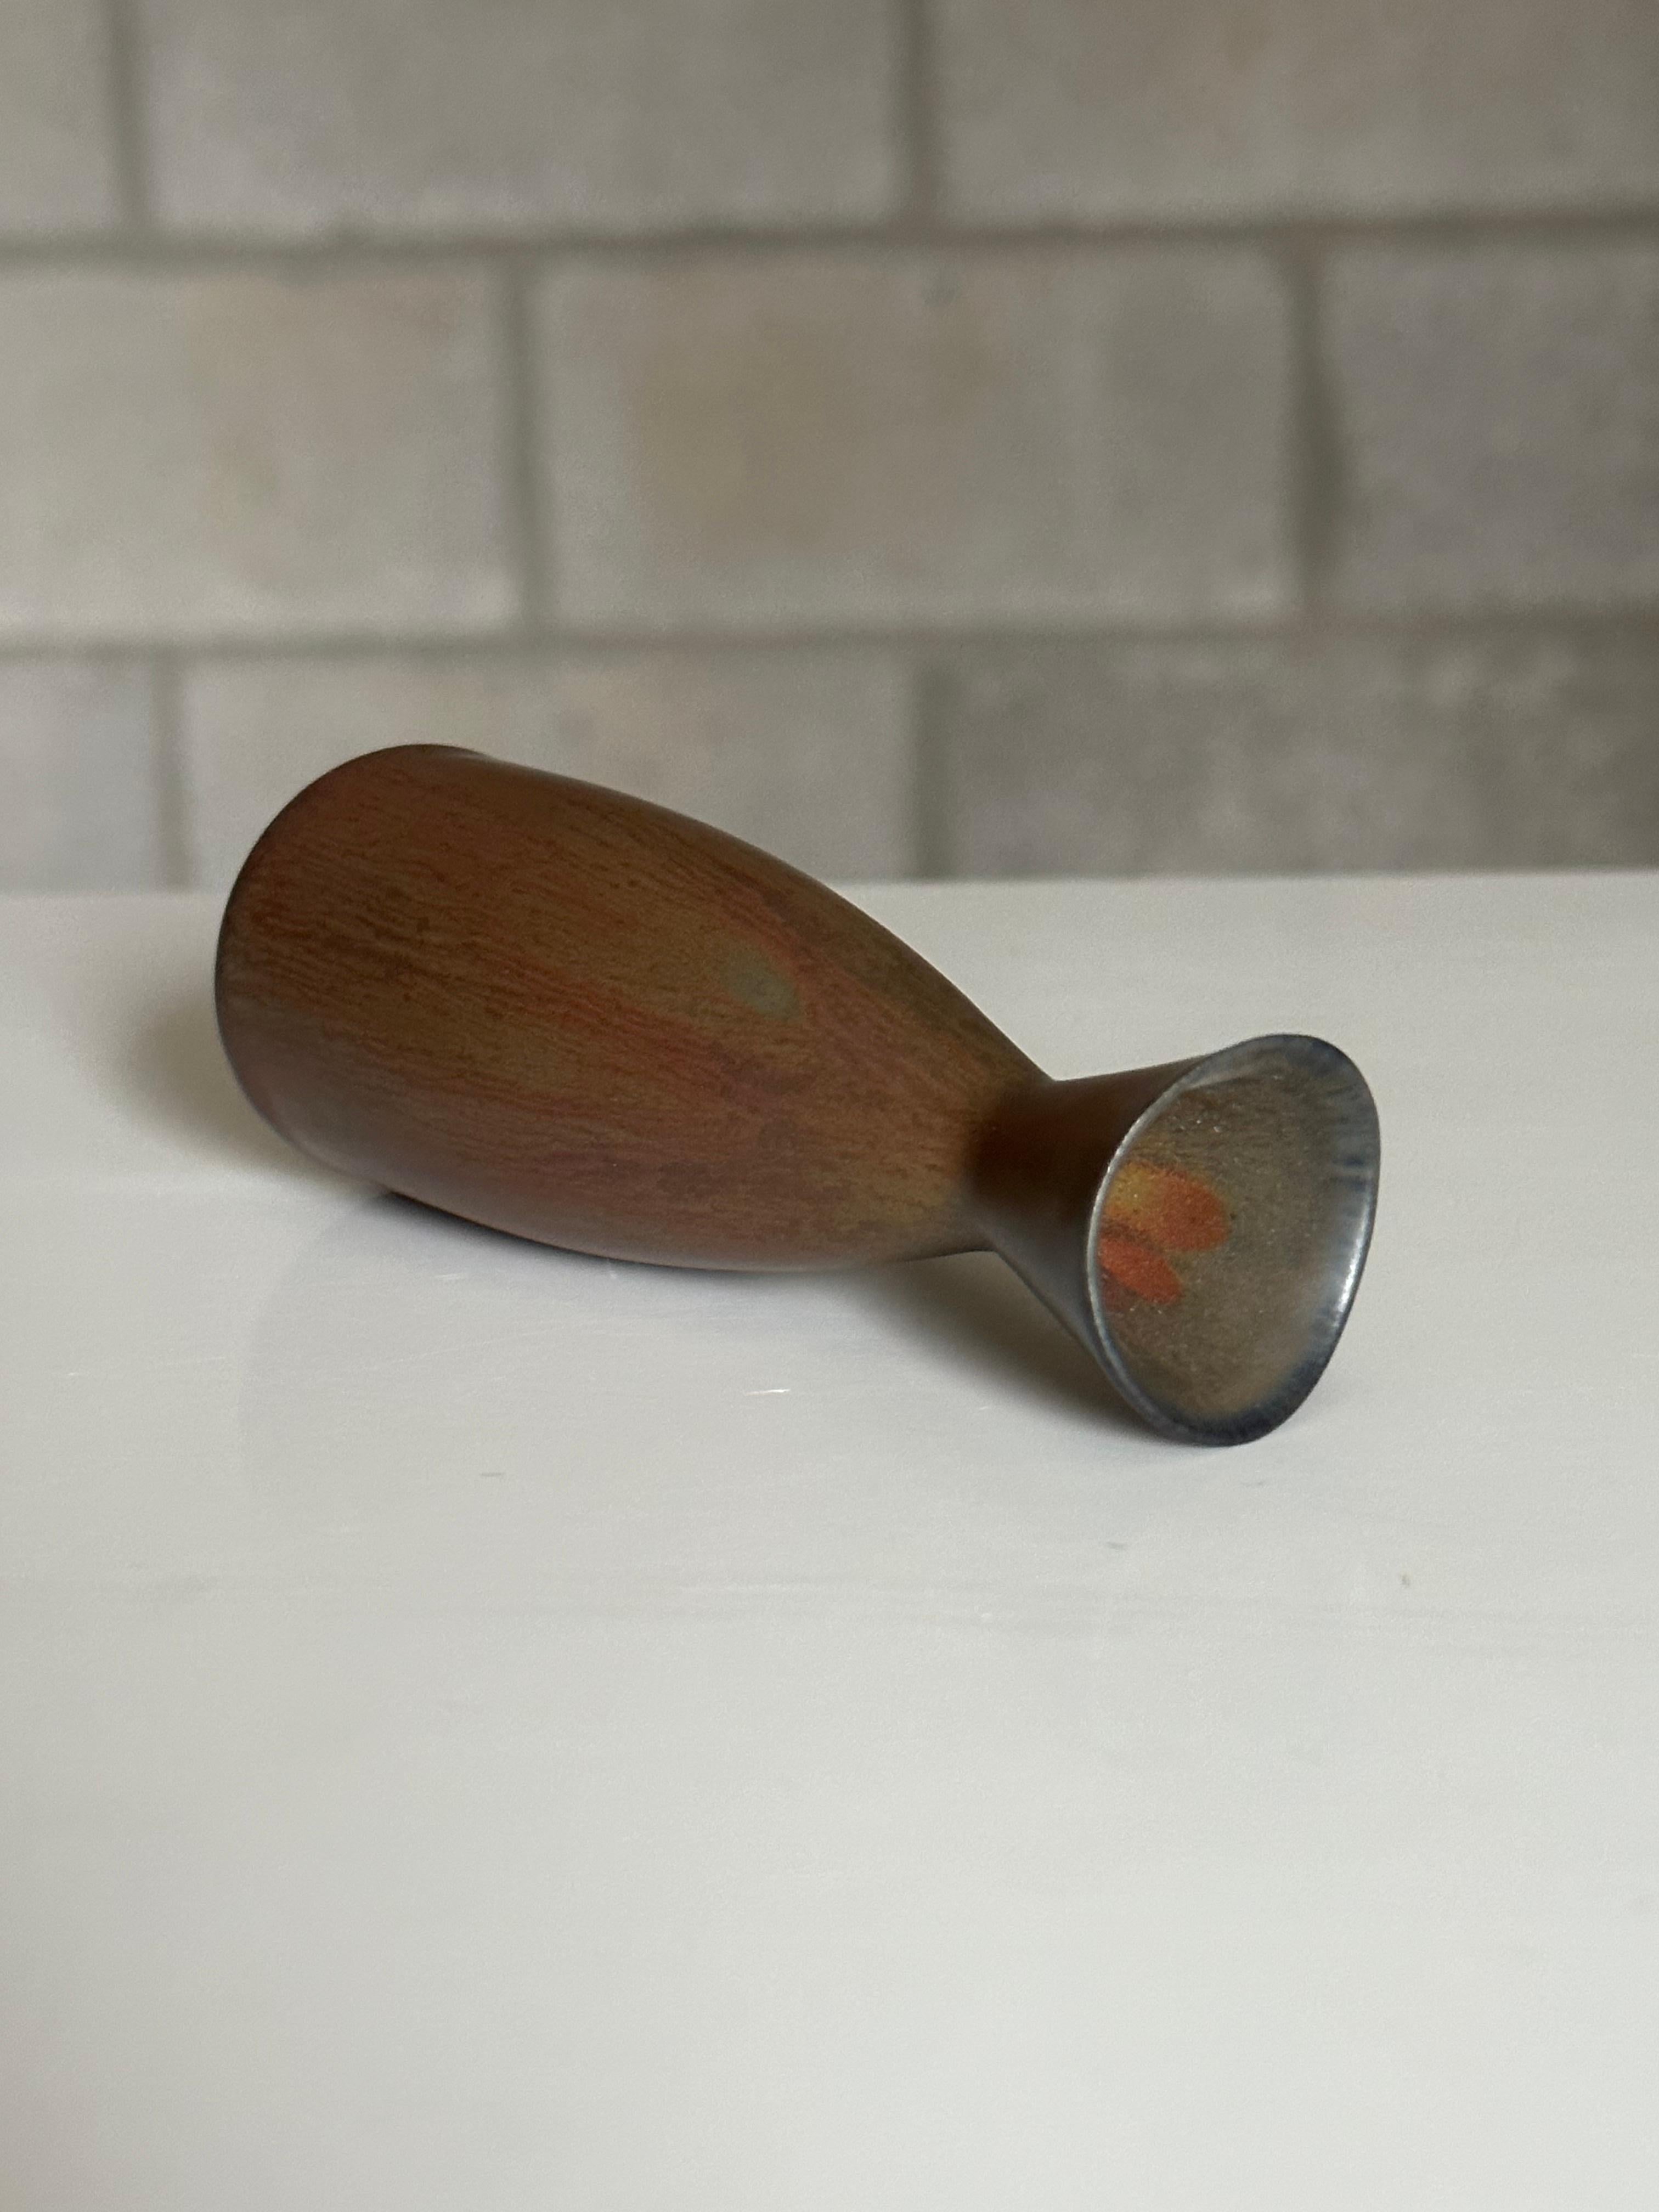 Un petit vase conçu par Carl-Harry Stålhane. Ce vase, qui constitue un excellent complément à toute collection, présente des tons de terre allant de rouille/terre cuite à ardoise/marron. En très bon état.